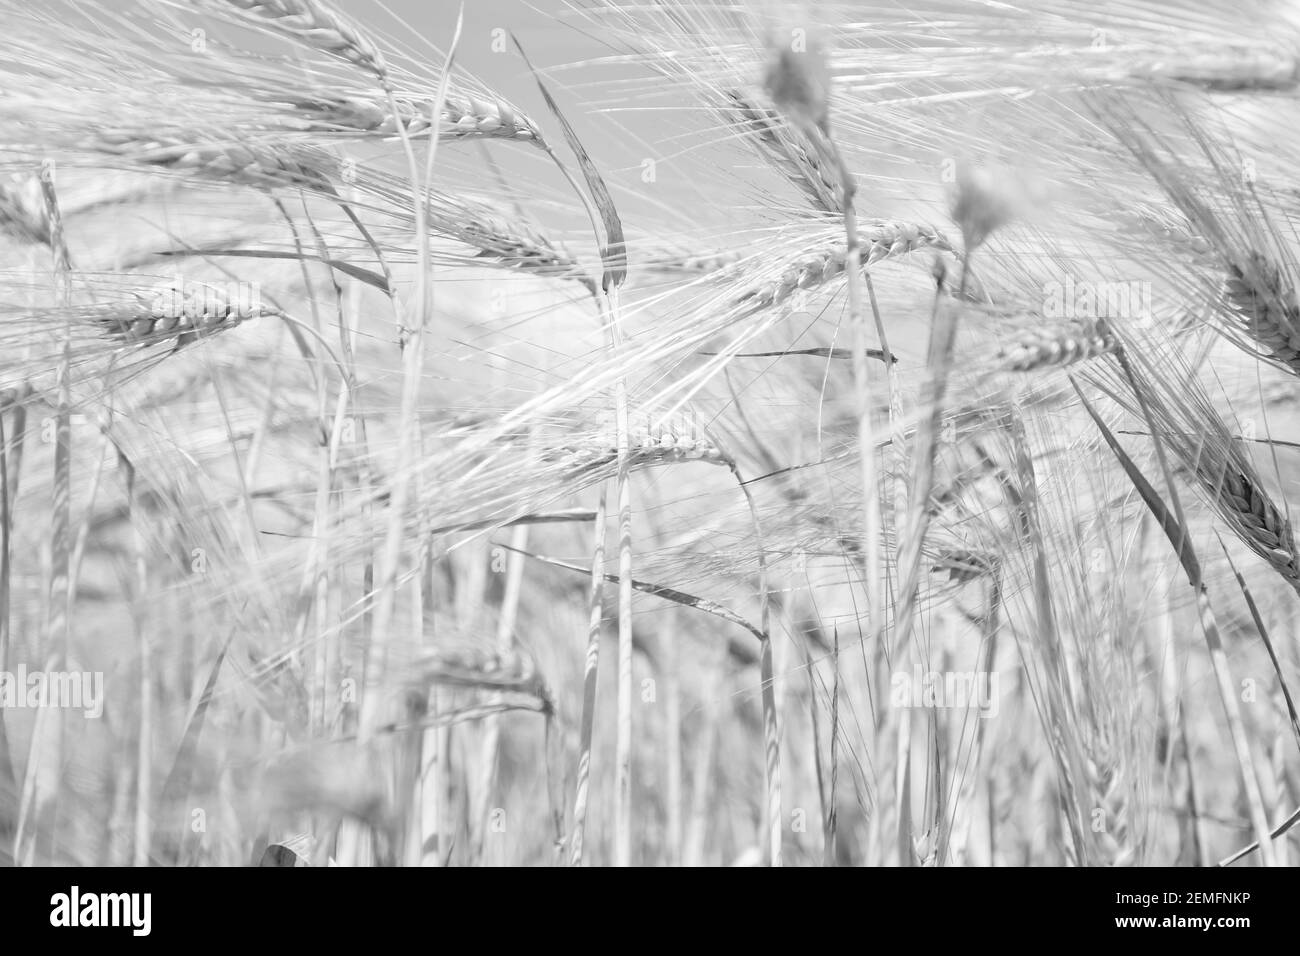 Noir et blanc bas de page de fond woth de nombreux épillets de blé, agriculture et culture alimentaire concept Banque D'Images